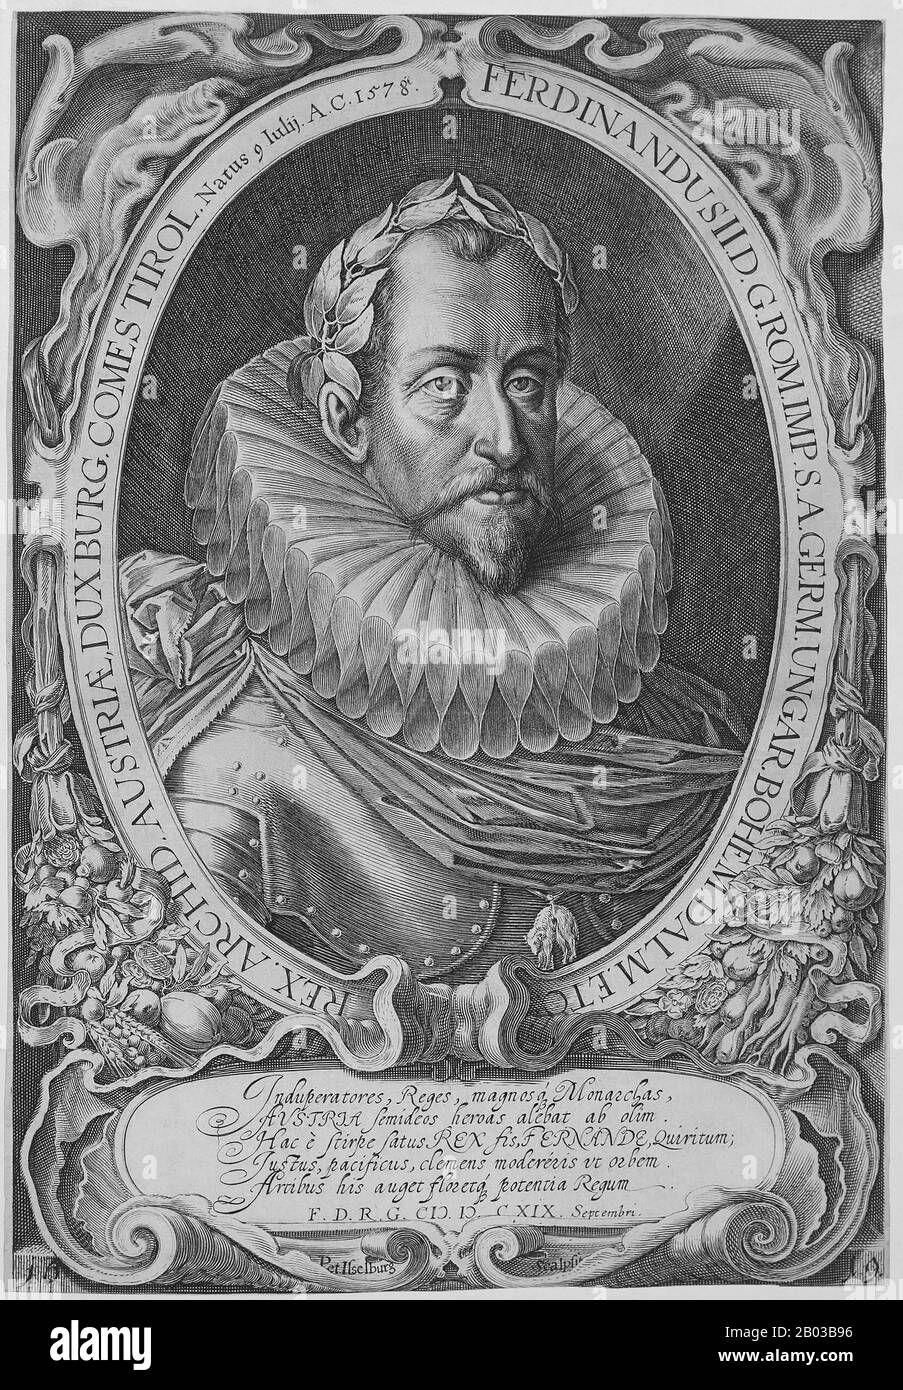 Ferdinando II (1578-1637) era figlio di Carlo II, Arciduca d'Austria, e nipote dell'imperatore Ferdinando I. Ferdinando faceva parte di una fazione cattolica contraria al cugino, l'imperatore Mattia, che era più tollerante al protestantesimo. Divenne re di Boemia nel 1617, re d'Ungheria nel 1618, e salì al Sacro Romano Impero nel 1619 dopo la morte del cugino. Foto Stock